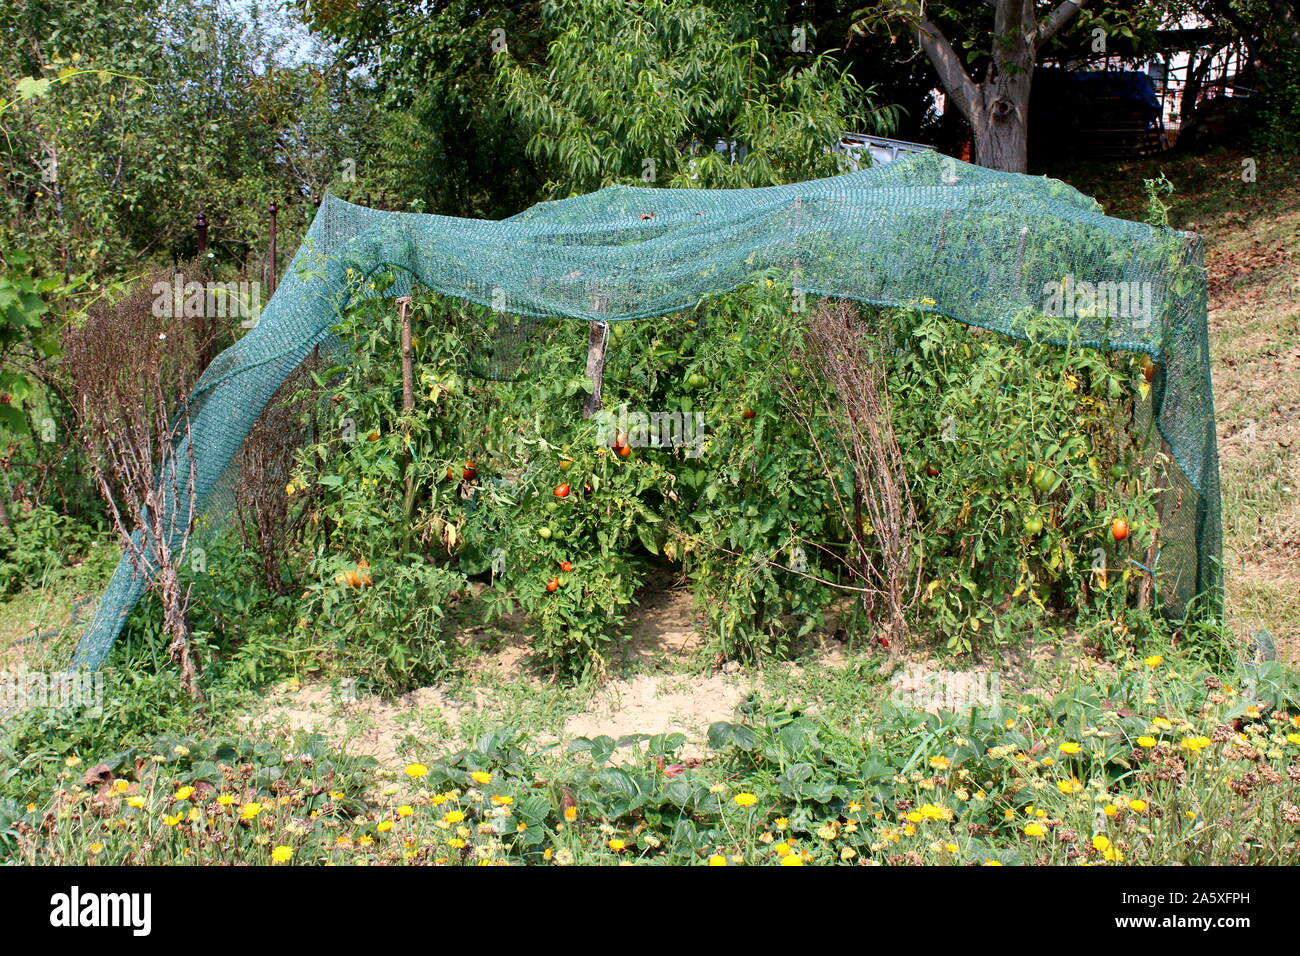 Grüne Netz zum Schutz abgedeckt lokale Home Garten mit dicht bepflanzte  Tomaten Pflanzen mit anderen Pflanzen und Bäume auf warmen und sonnigen  Sommer Tag umgeben Stockfotografie - Alamy